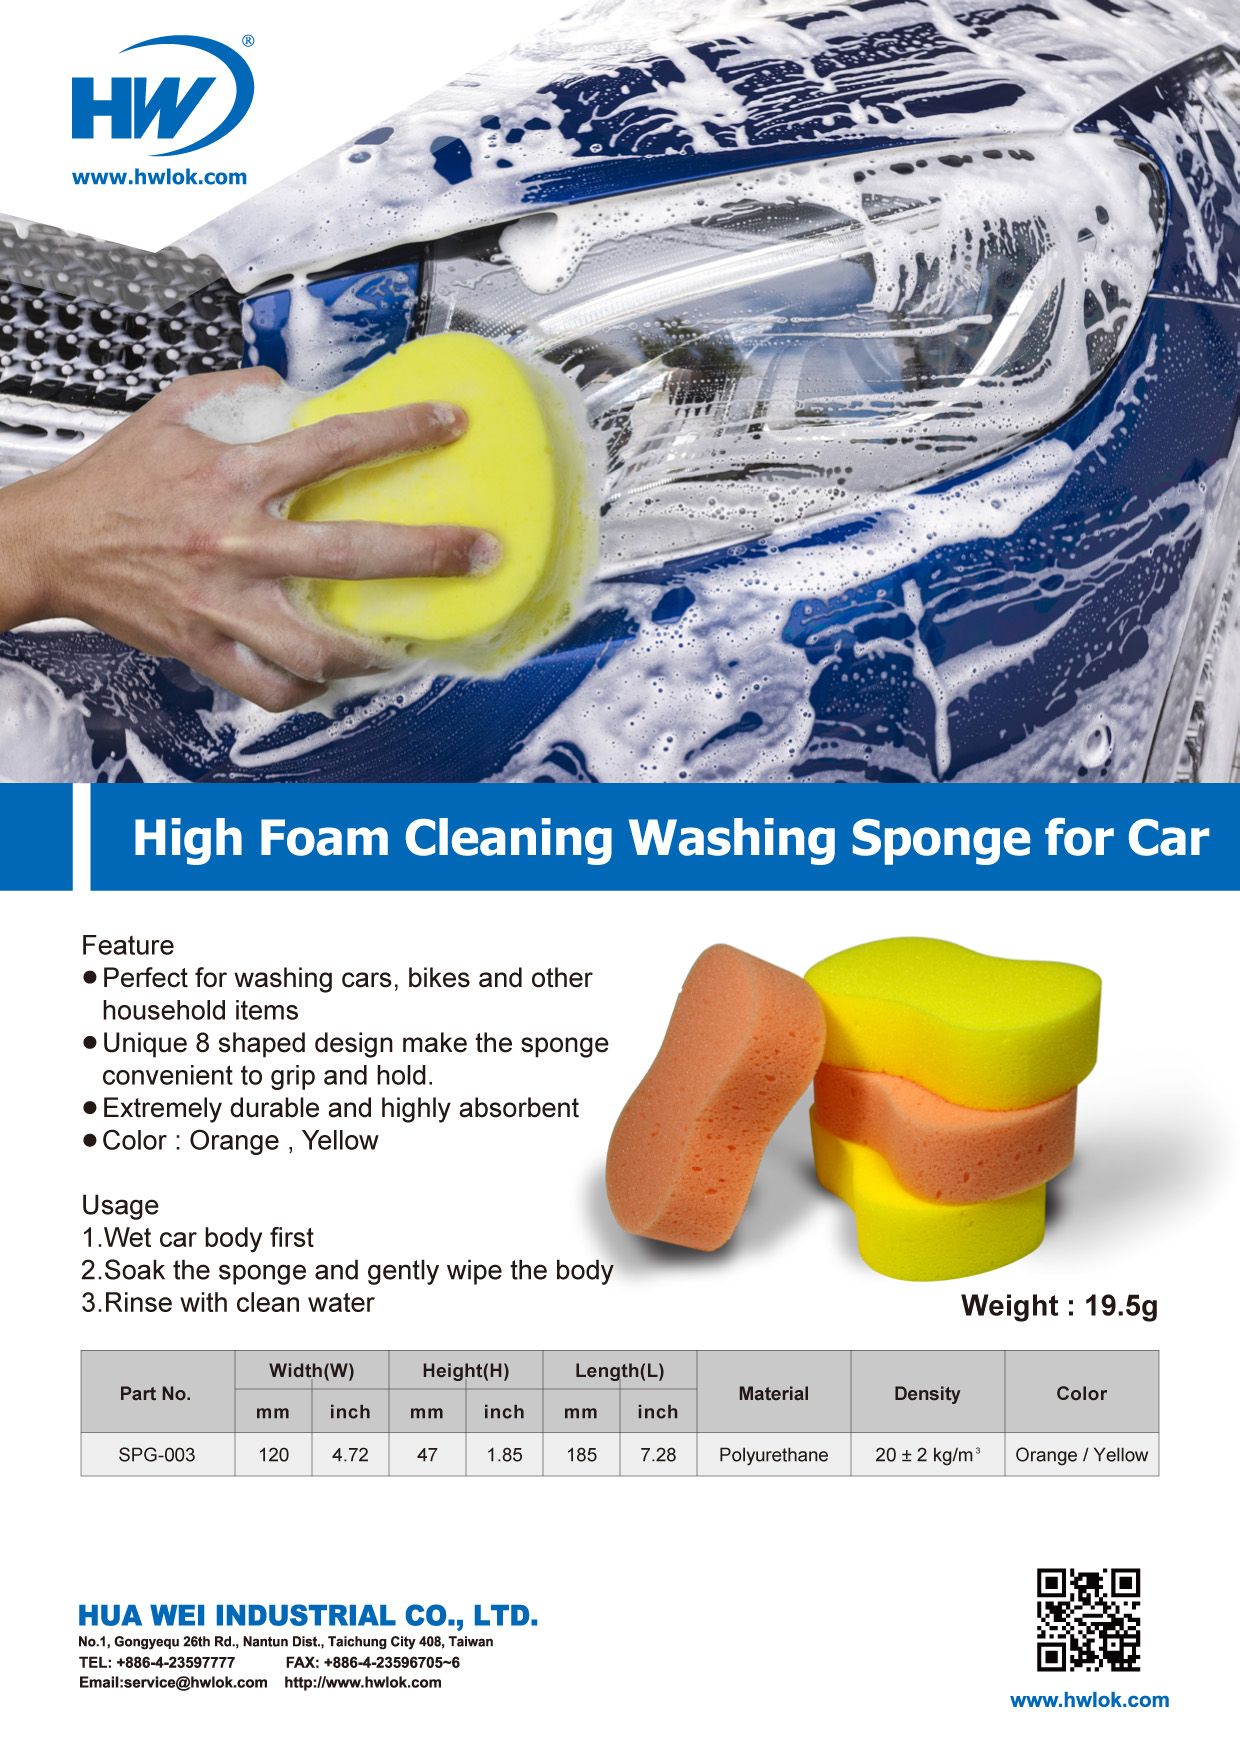 Esponja de Limpeza de Espuma Alta para Lavagem de Carro-DM